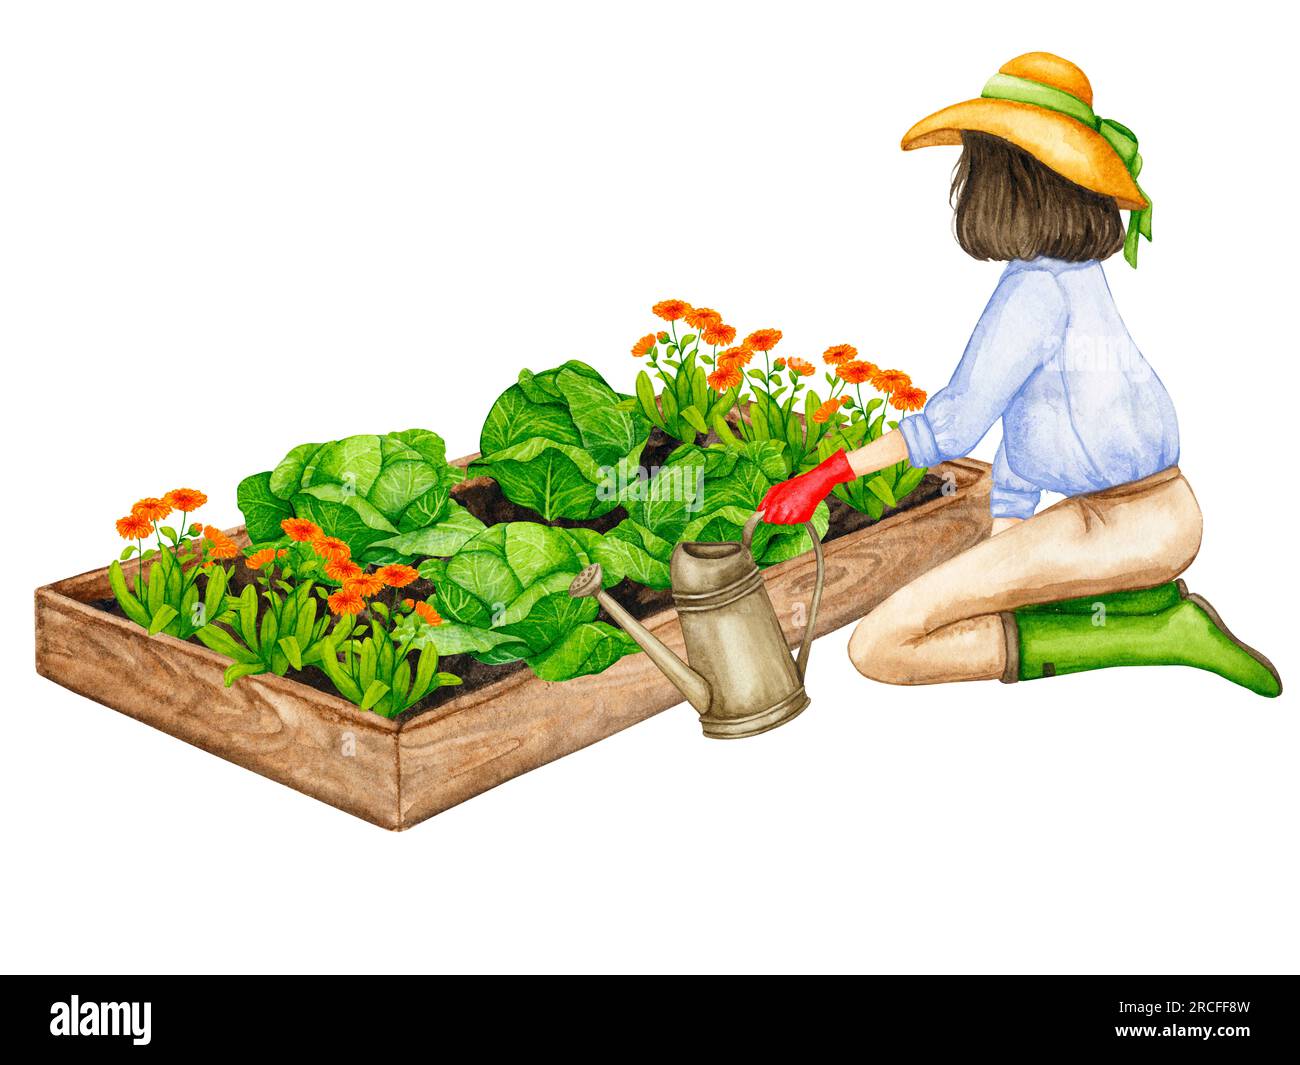 Una donna annaffia un letto da giardino con il cavolo che cresce da una lattina d'acqua. Composizione sul tema del giardinaggio, delle piantine primaverili, della coltivazione delle verdure. Foto Stock